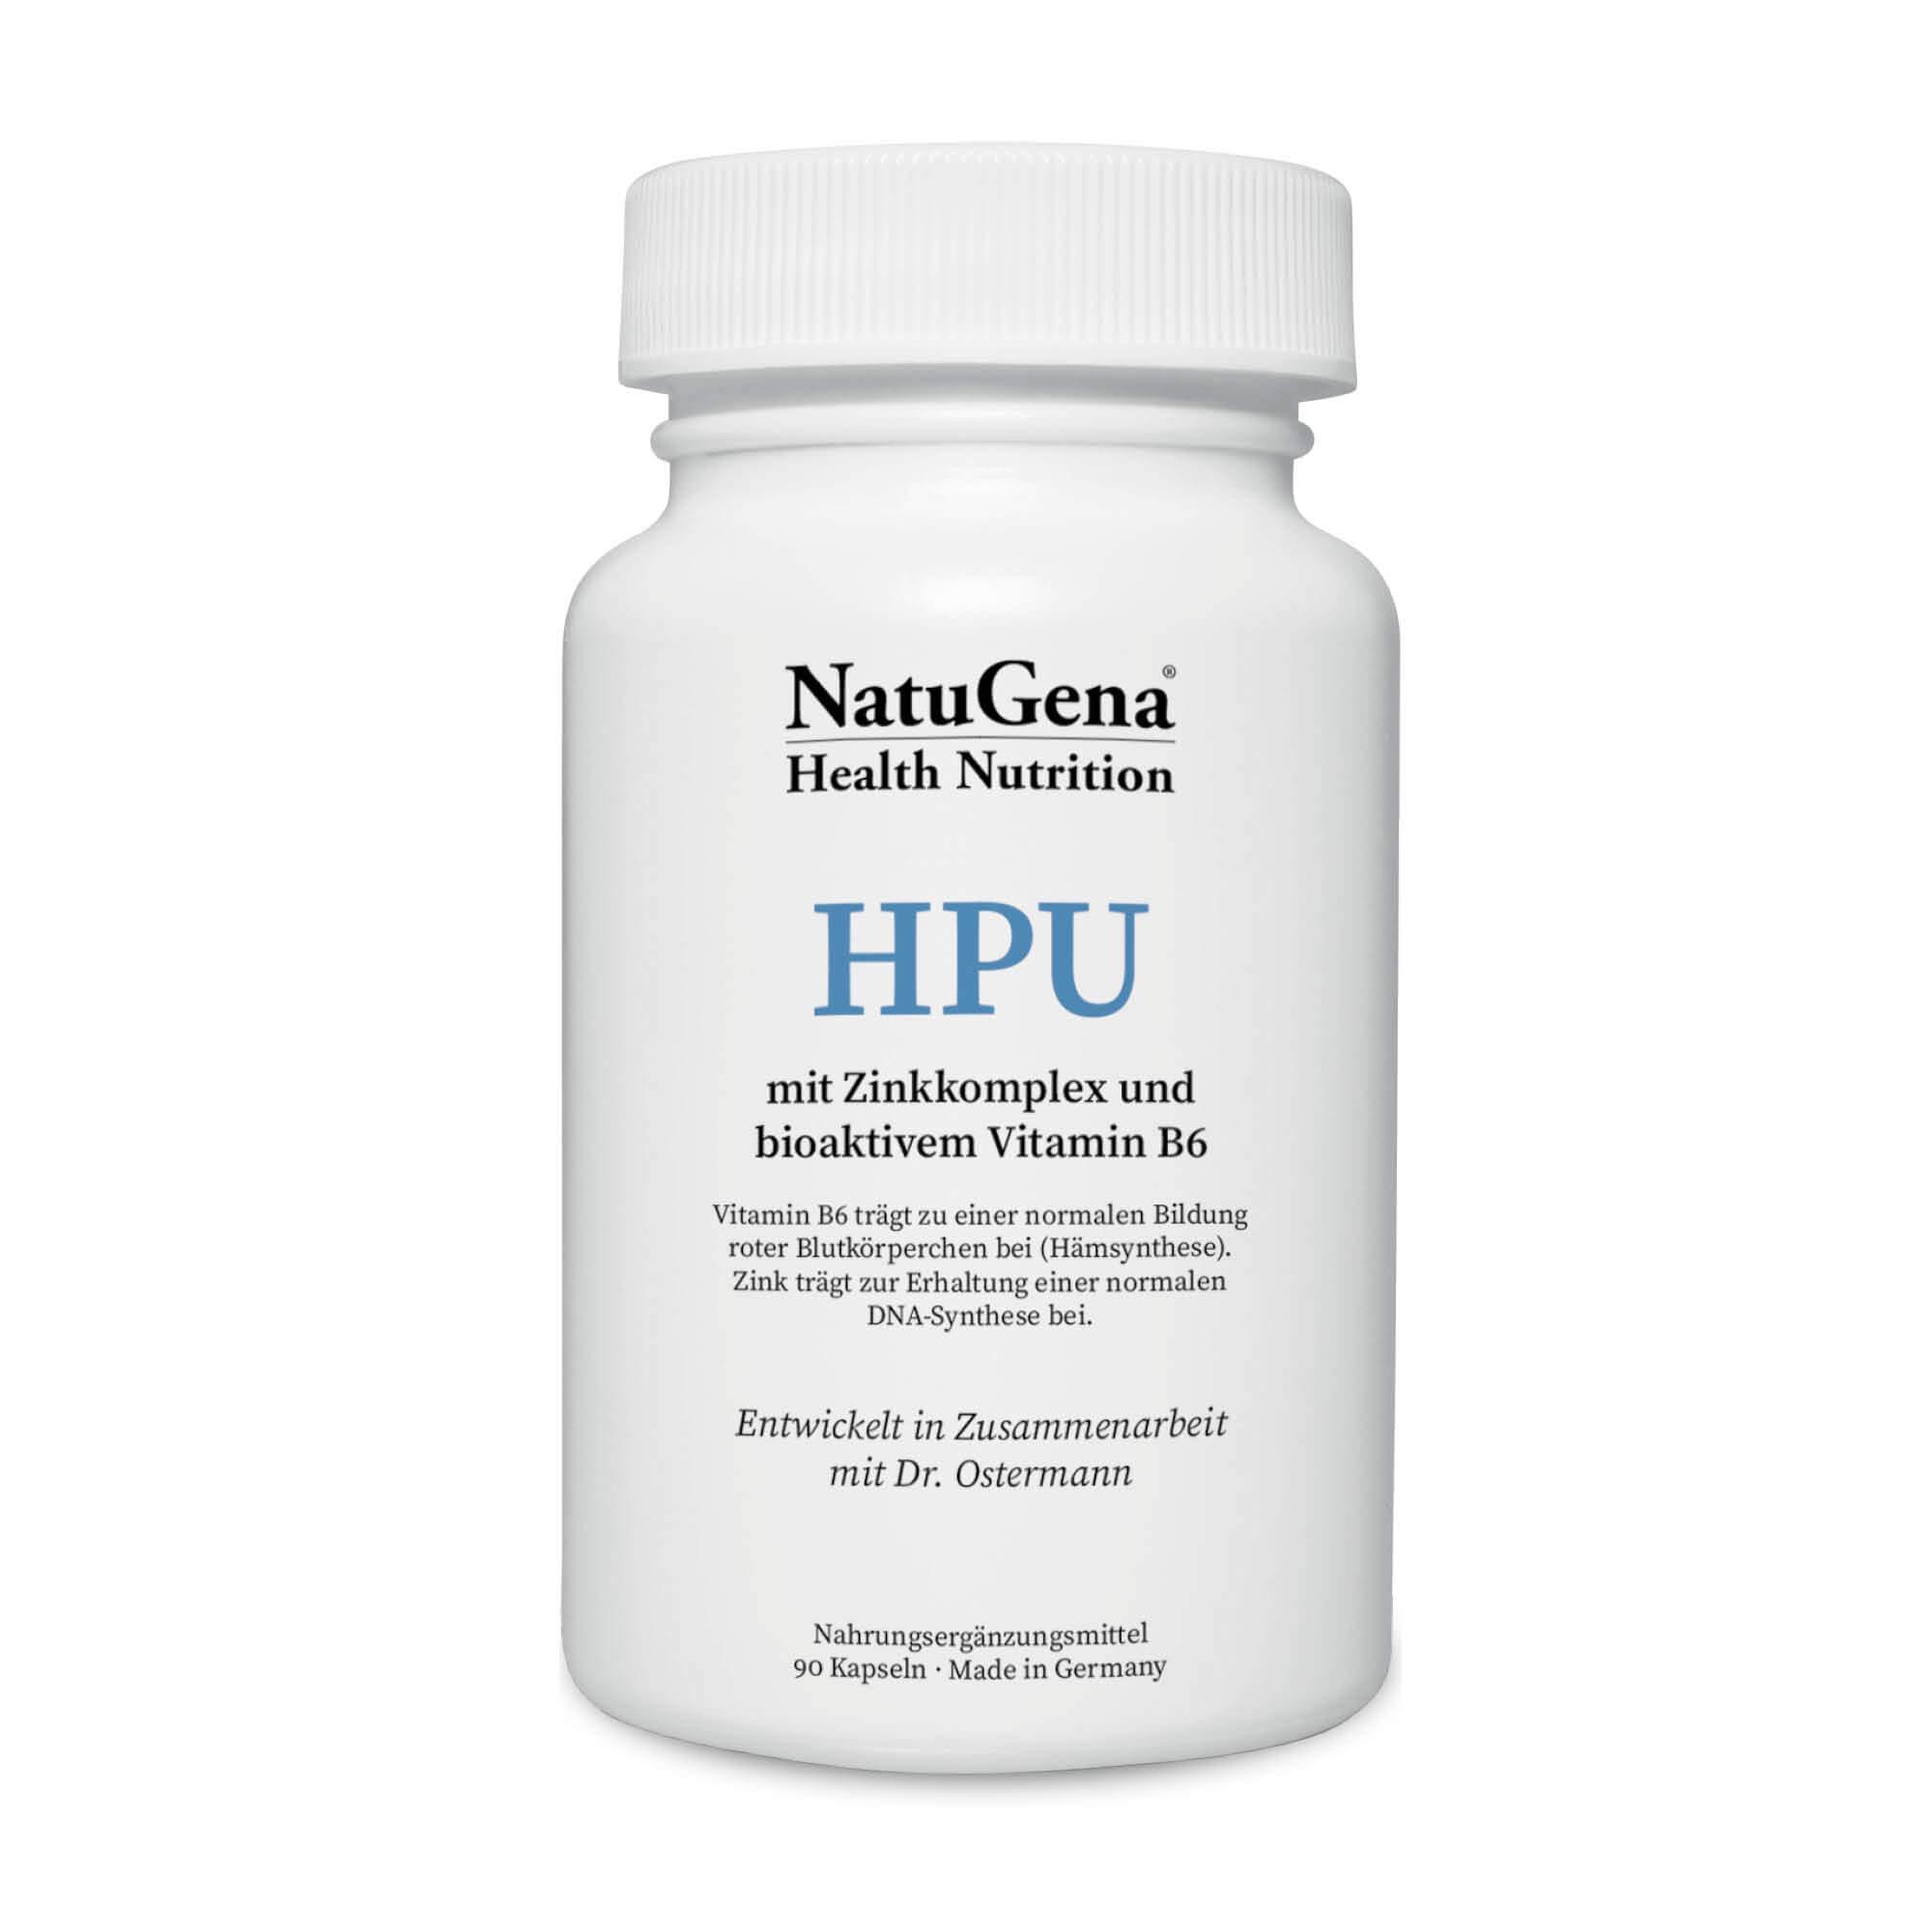 NatuGena HPU | mit Zinkkomplex & bioaktivem Vitamin B6 | 90 Kapseln